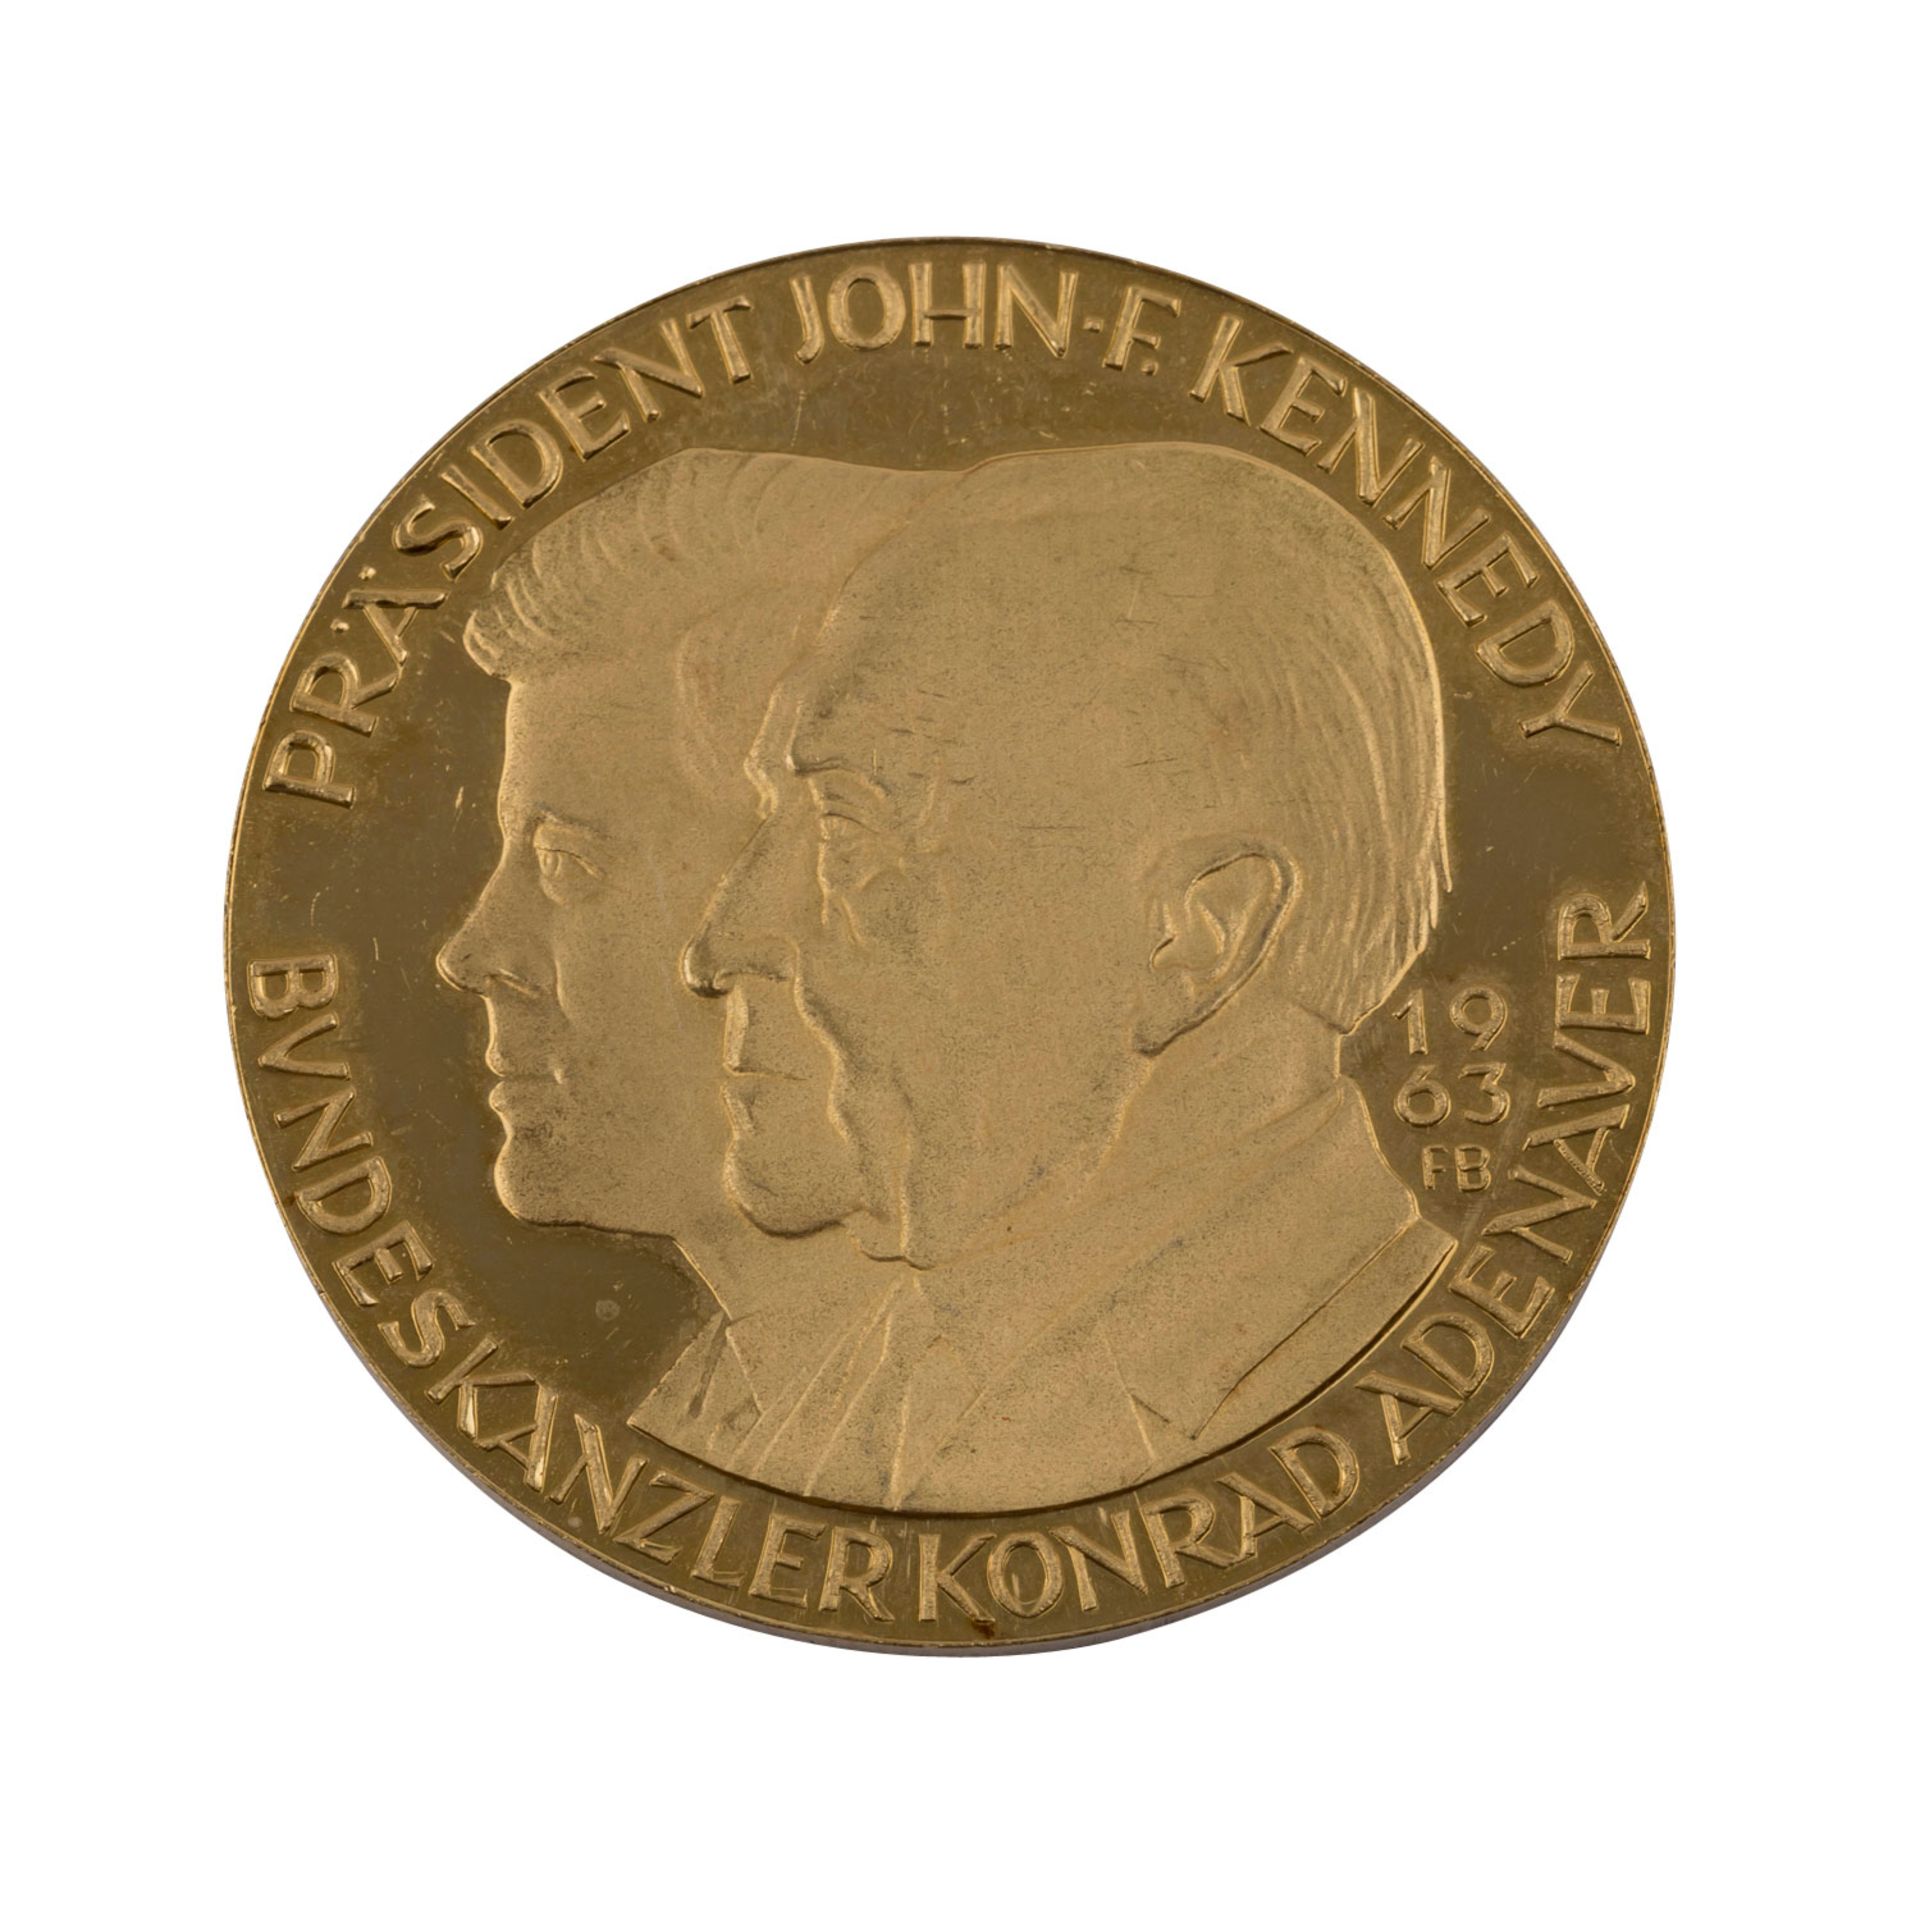 GOLDMEDAILLE - Kennedy und Adenauer 1963,Friedenstaube / Politiker im Profil. Medailleur FB. Gold